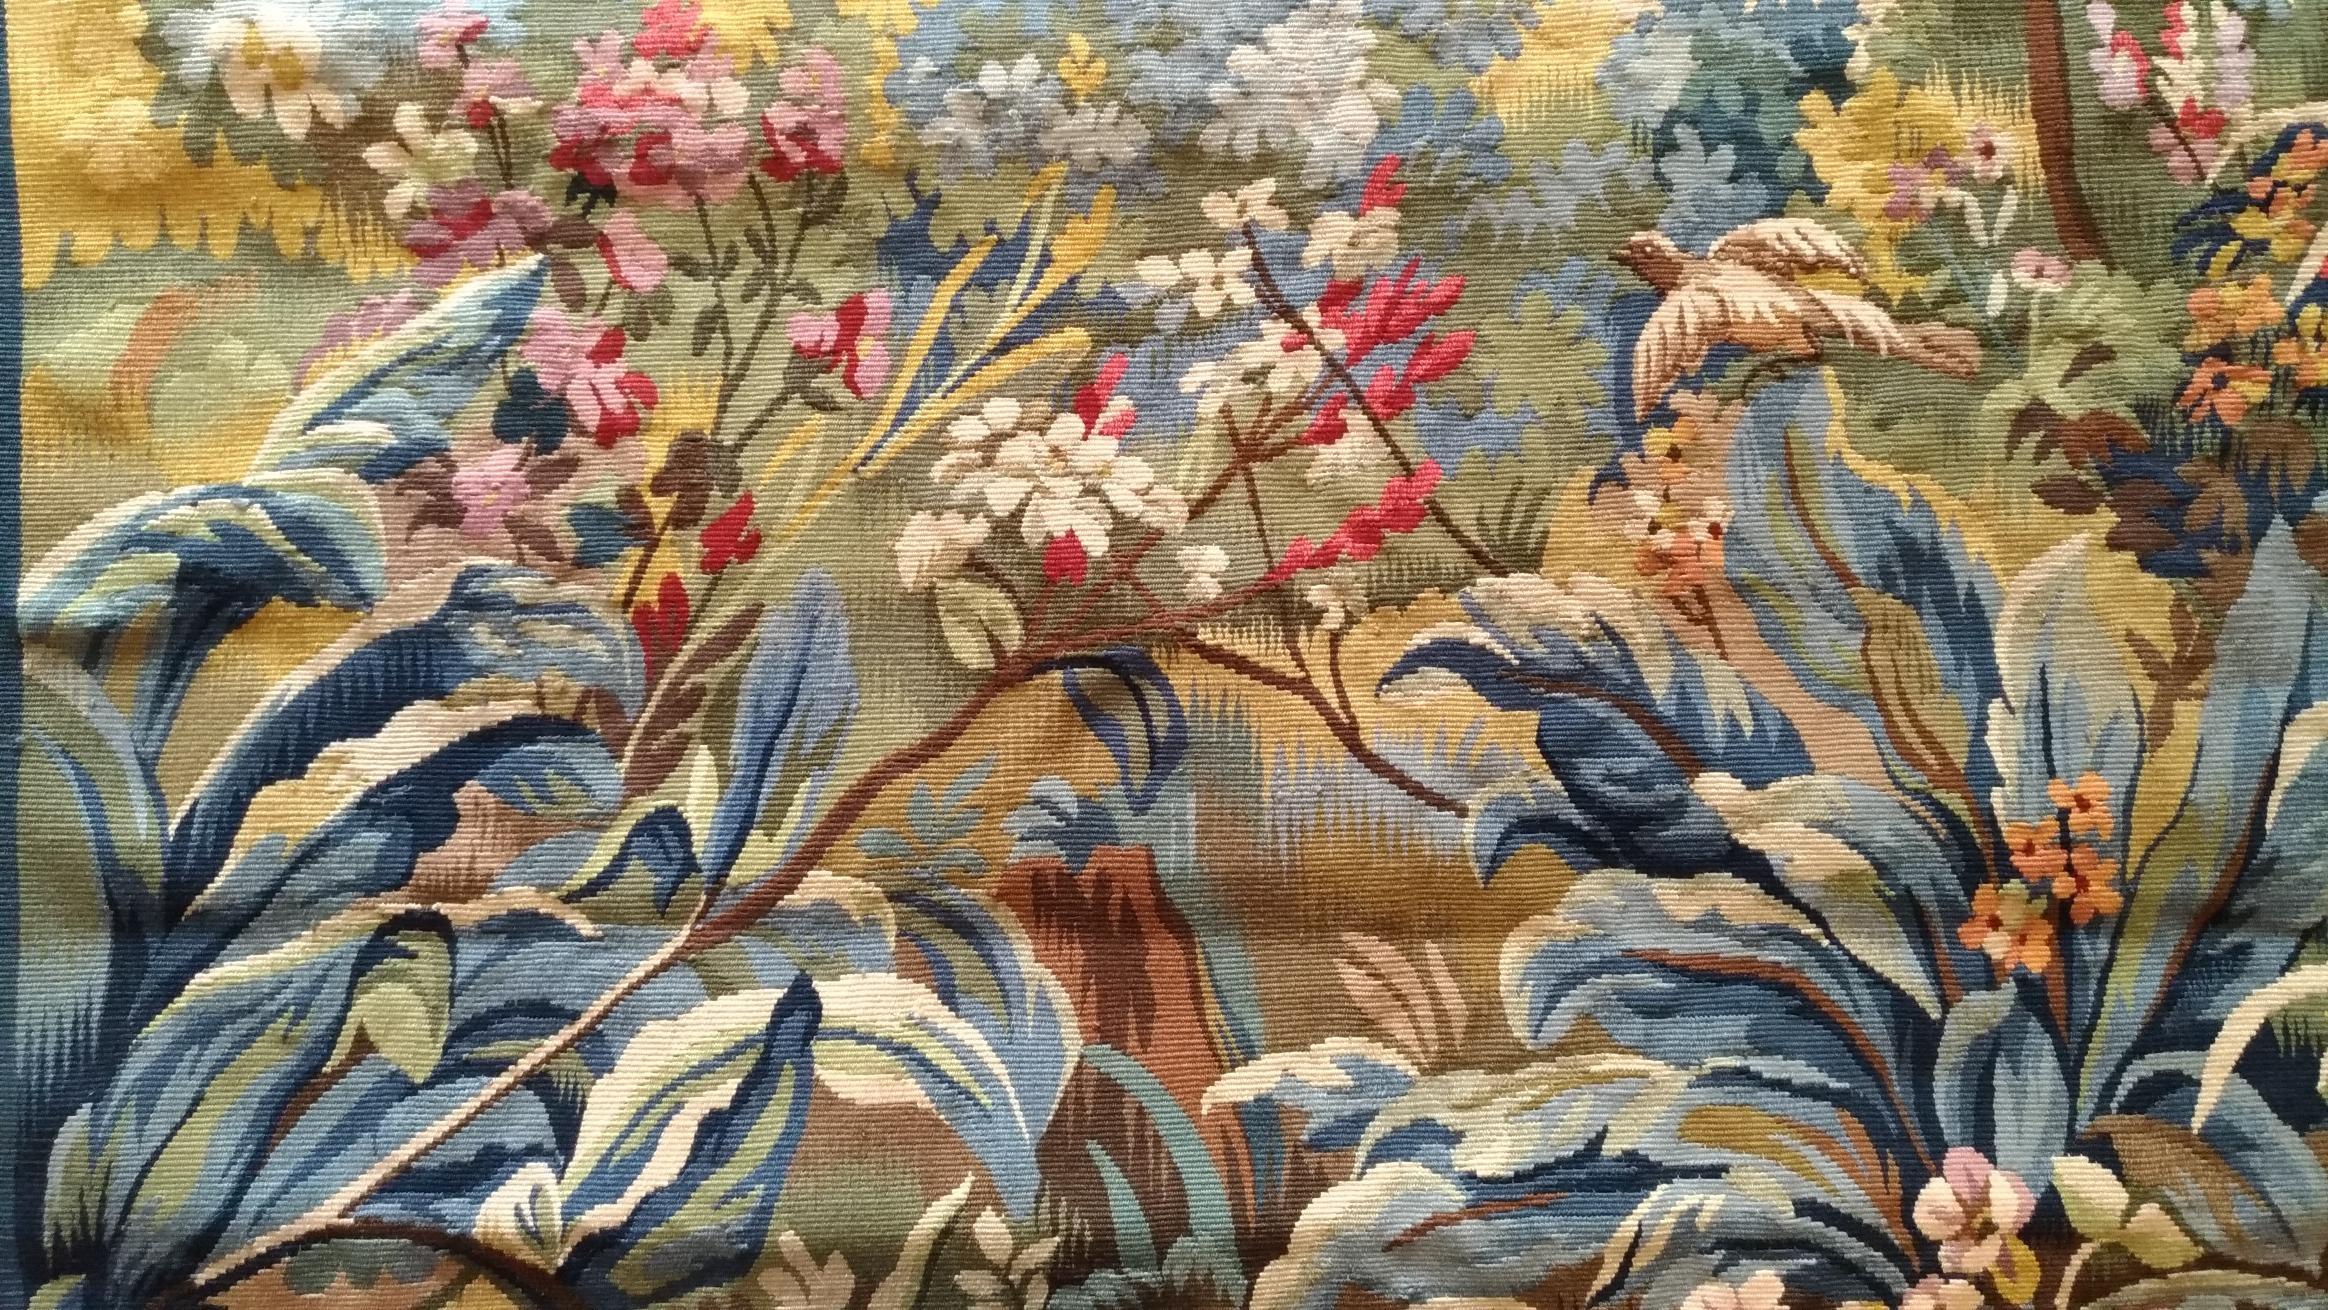 très jolie tapisserie d'Aubusson du 20ème siècle avec des oiseaux et un château et des couleurs très fraîches

Grâce à notre atelier de restauration-conservation et aussi à notre savoir-faire, 
nous avons le plaisir de vous présenter des œuvres